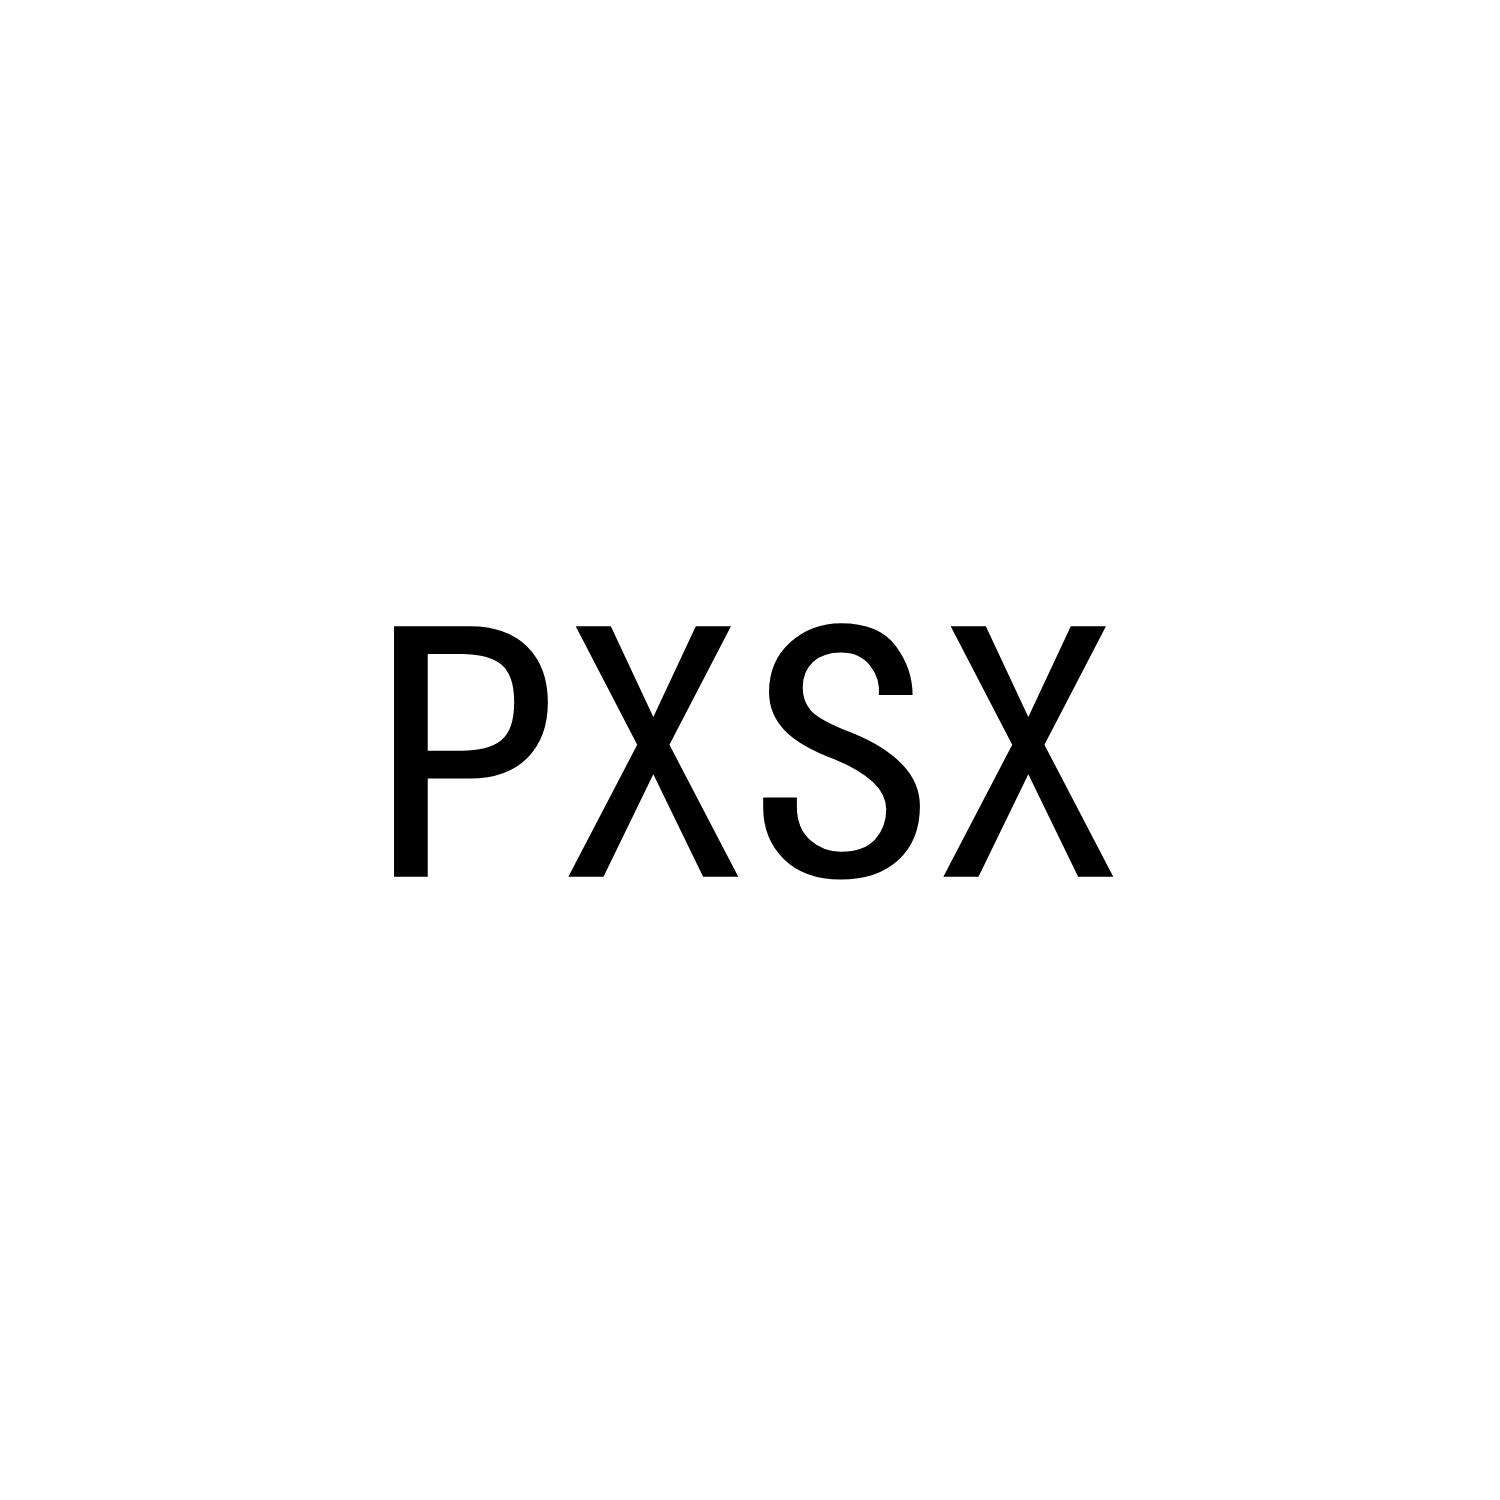 PXSX